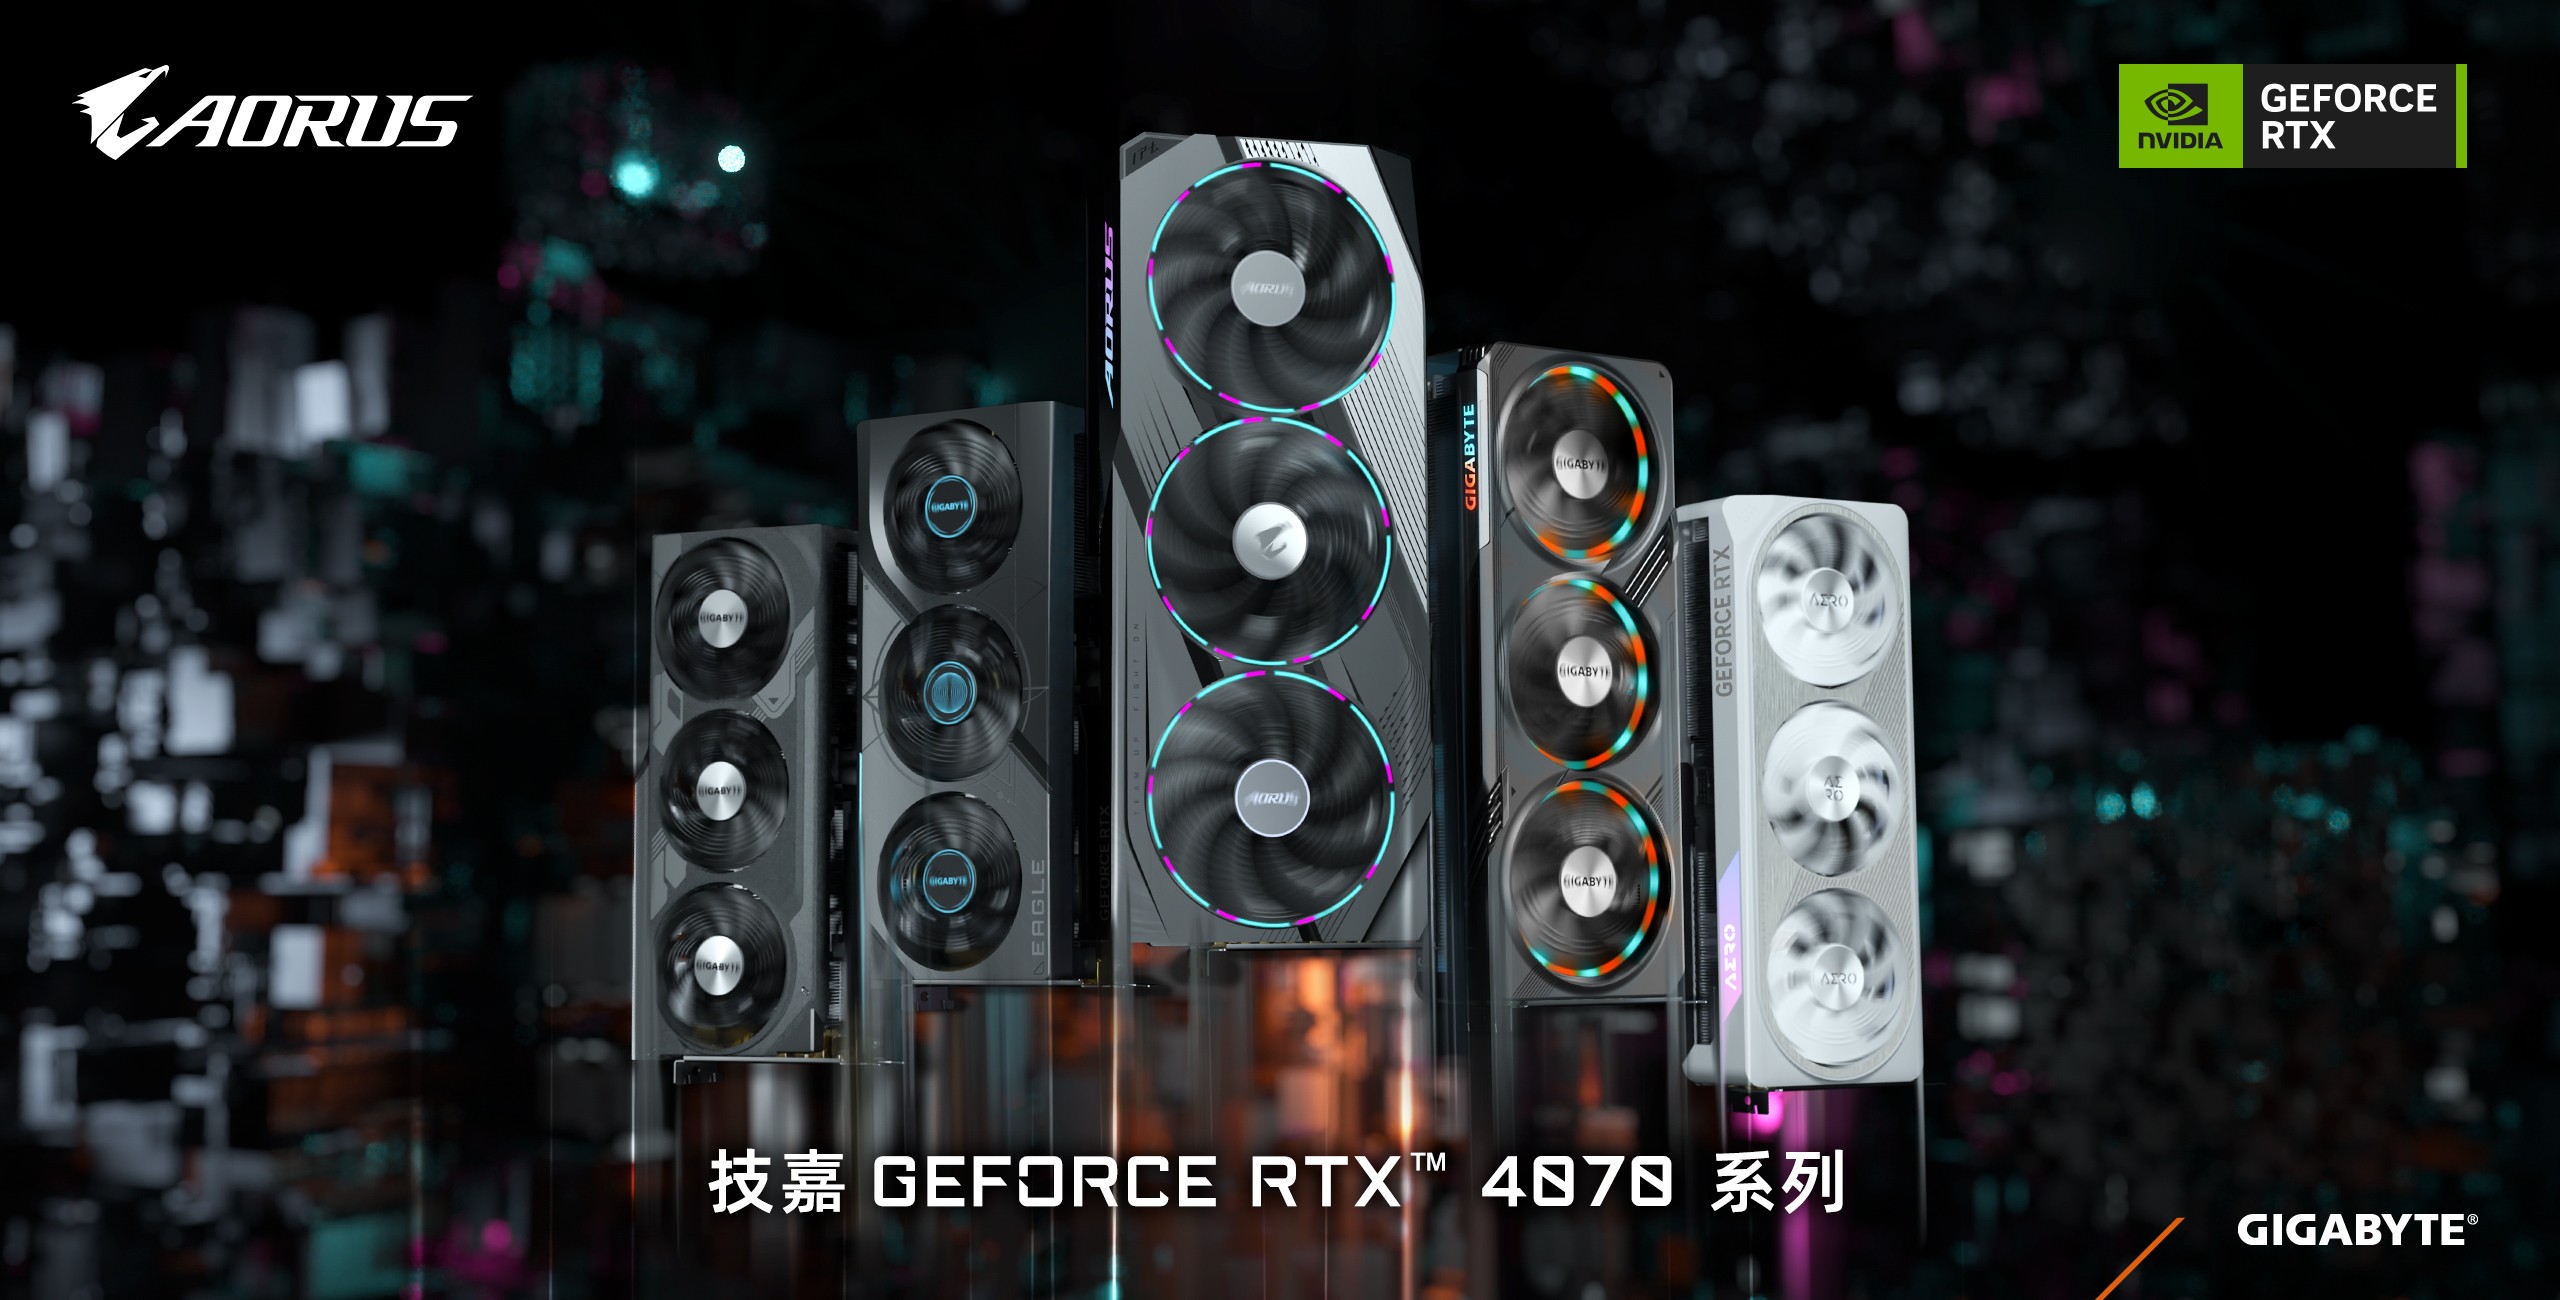 技嘉科技推出GeForce RTX 4070系列显卡